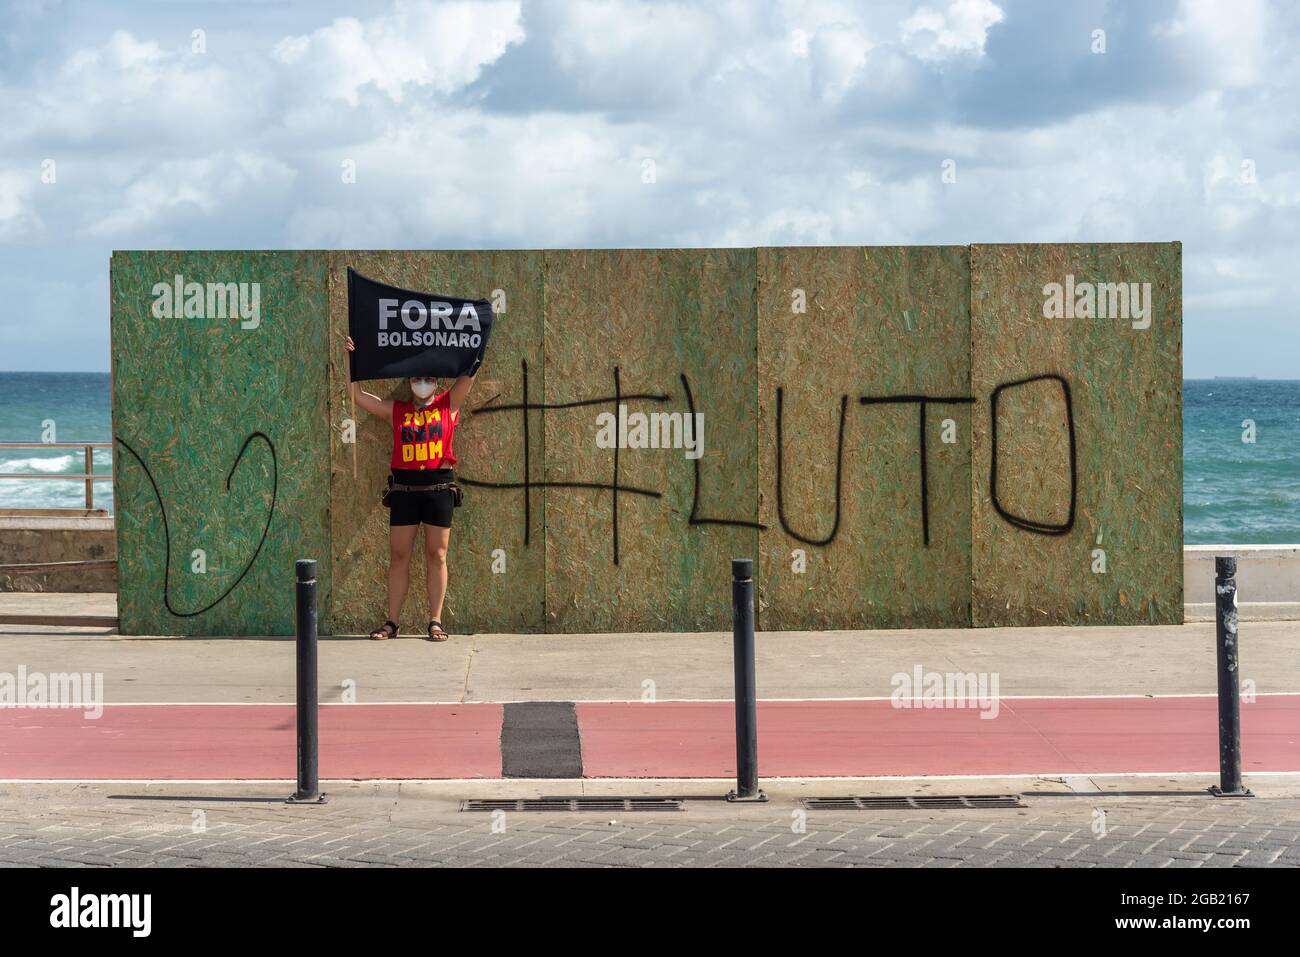 Salvador, Bahia, Brasil - 01 de mayo de 2021: Militante del partido político protestando en la calle por la salida del presidente de la república, Jair bol Foto de stock